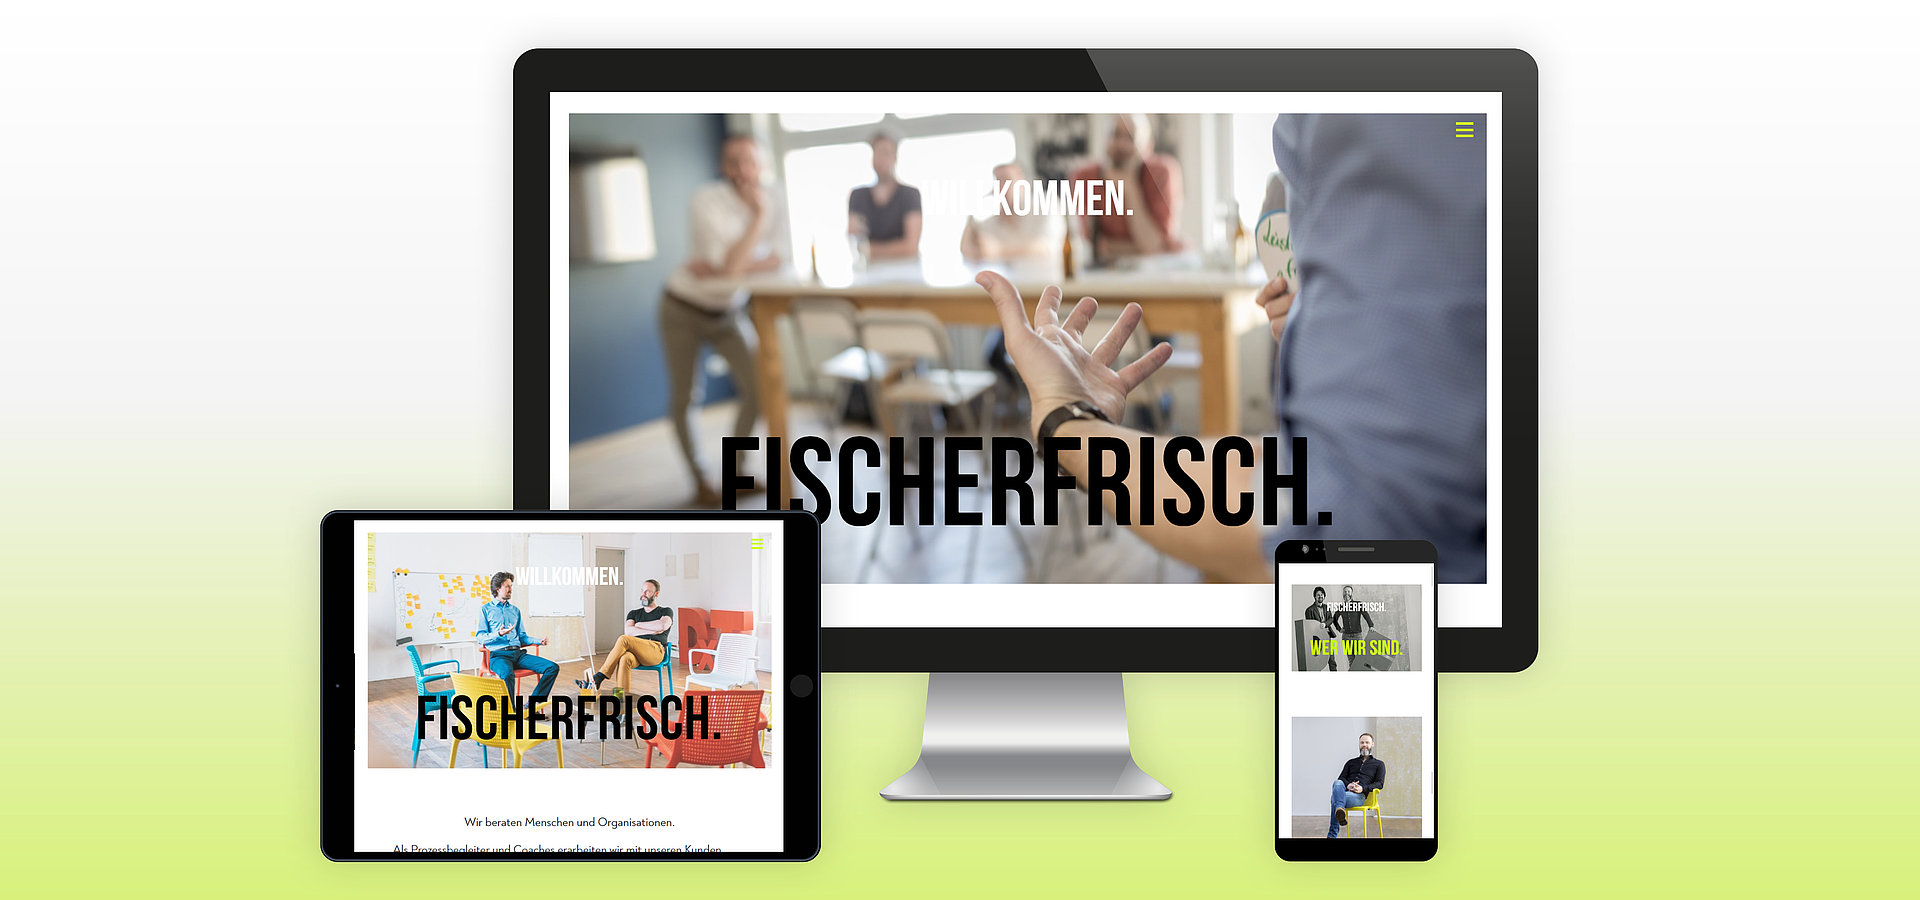 TYPO3 Webdesign: TYPO3 CMS Webdesign für die FischerFrisch GmbH